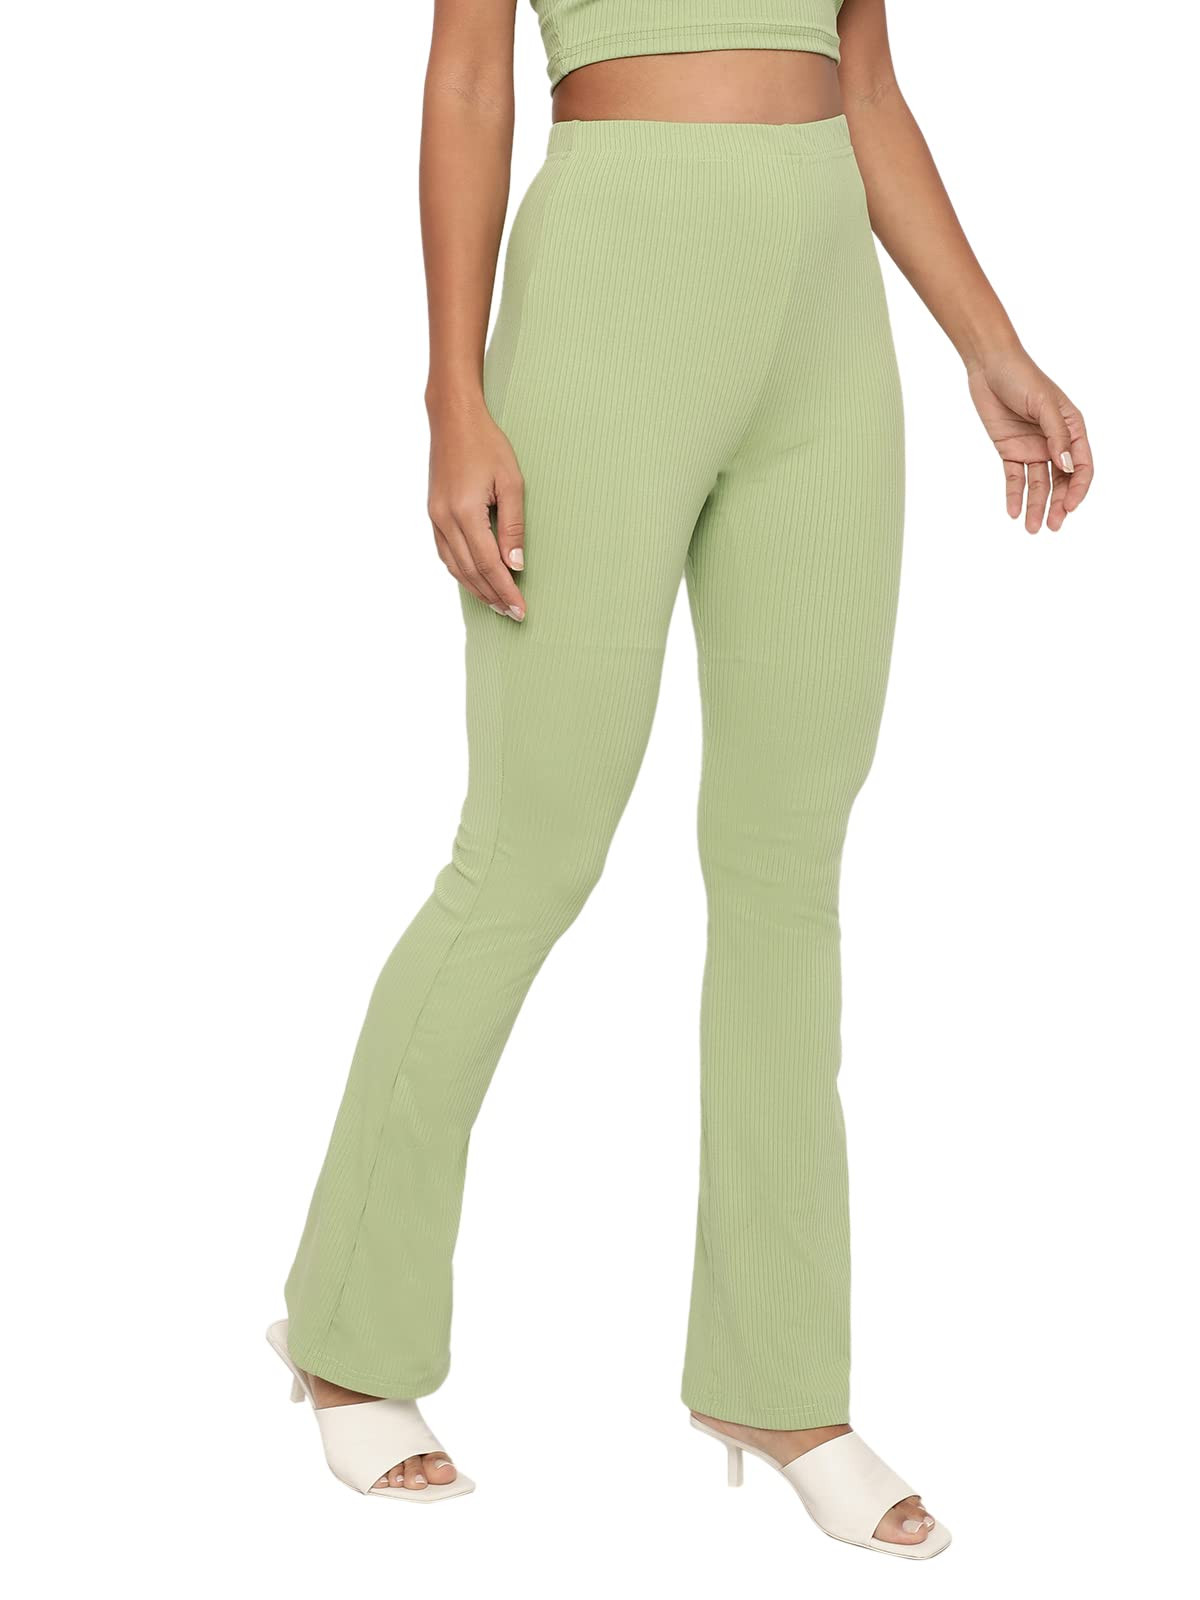 https://www.fastemi.com/uploads/fastemicom/products/shasmi-pista-green-lightweight-stretchable-yoga-pants-boot-cut-regular-fit-trouser-pant-57-pant-pista-green-xlsize-xl-199453444113803_l.jpg